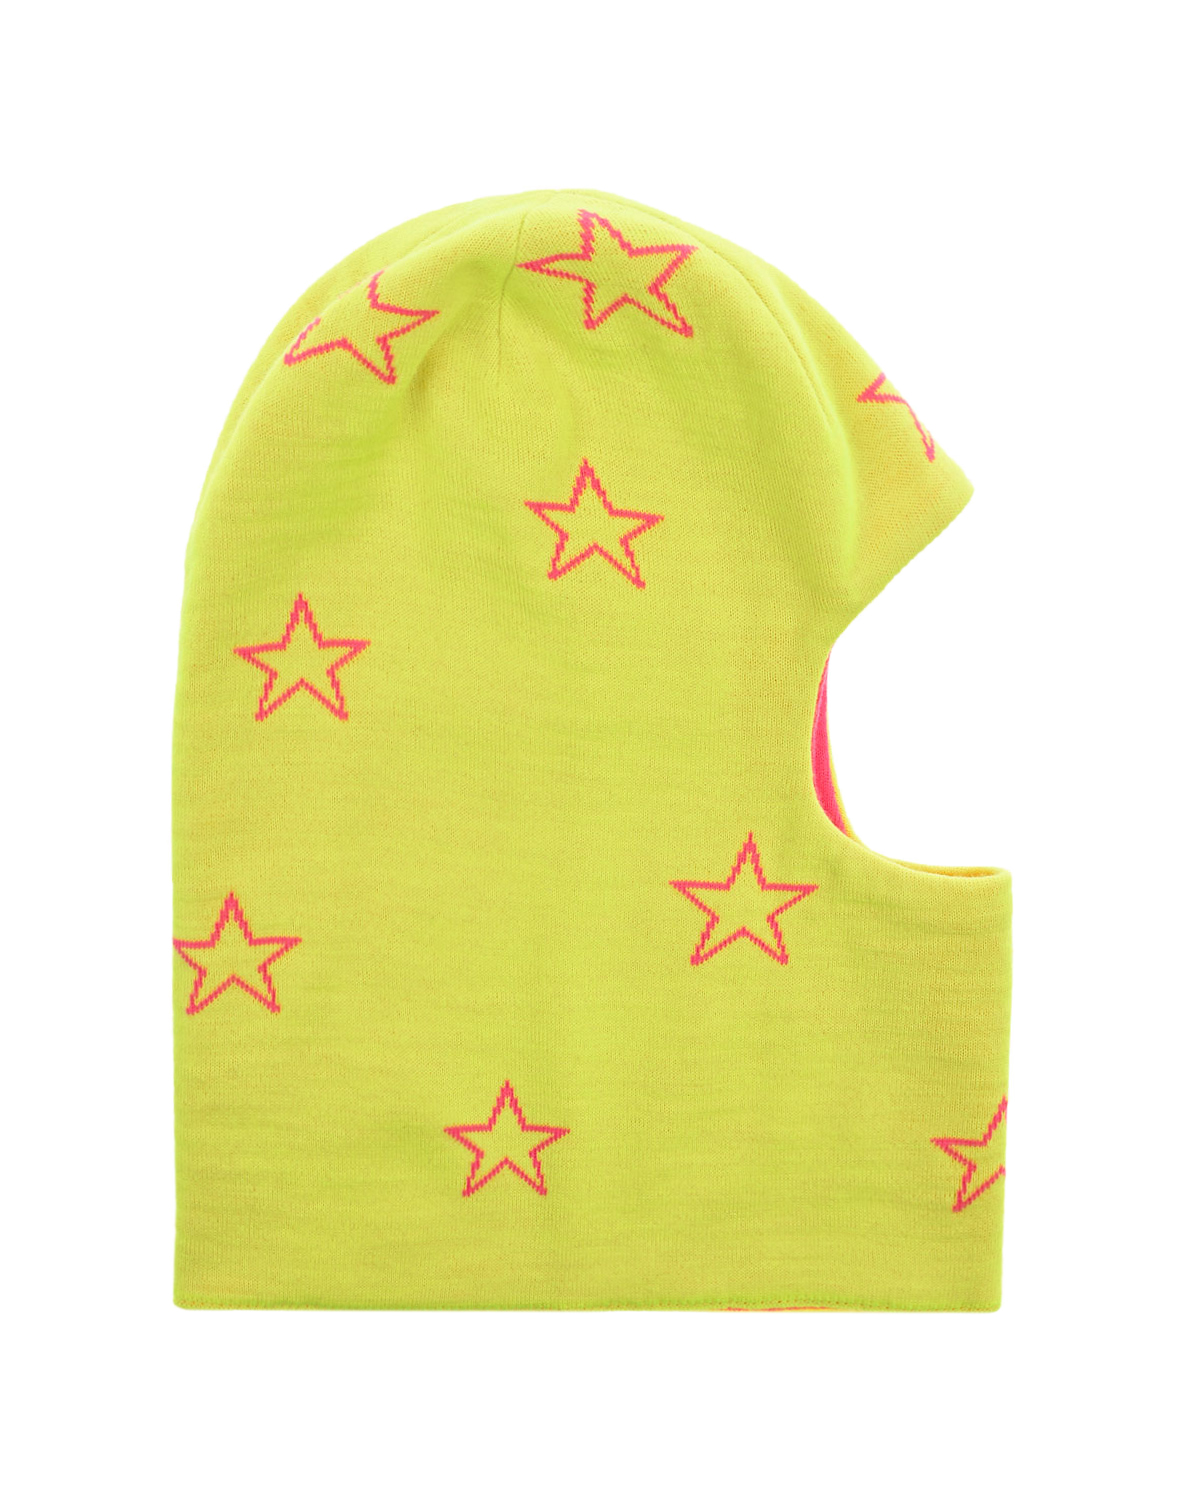 Желтая шапка-шлем с розовыми звездами Chobi детская, размер 52/54, цвет черный